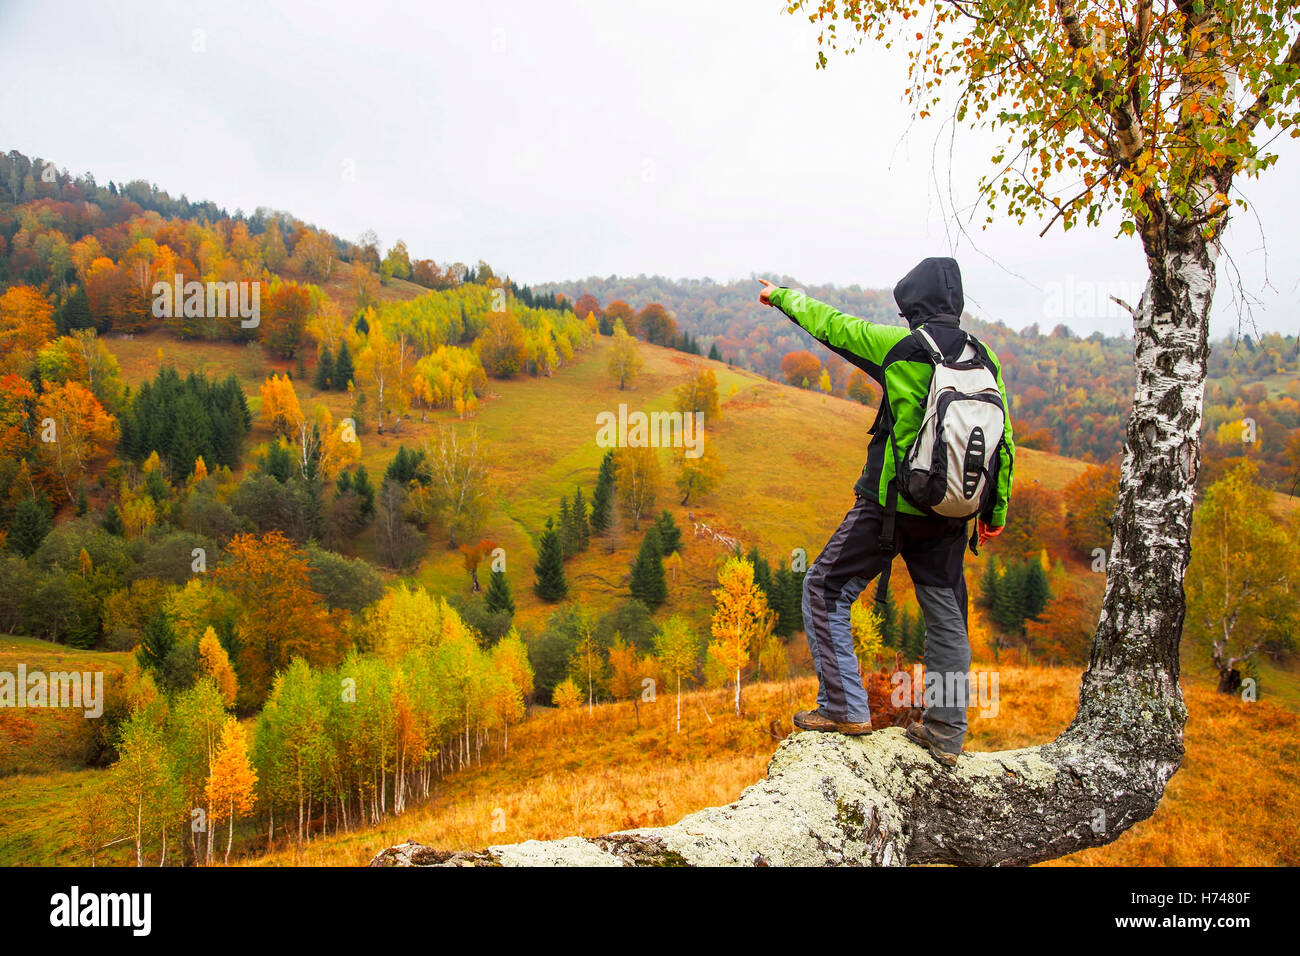 Escursionista sul tronco di betulla ammirare colorate alberi e prati panorama.L'attività all'aperto Foto Stock